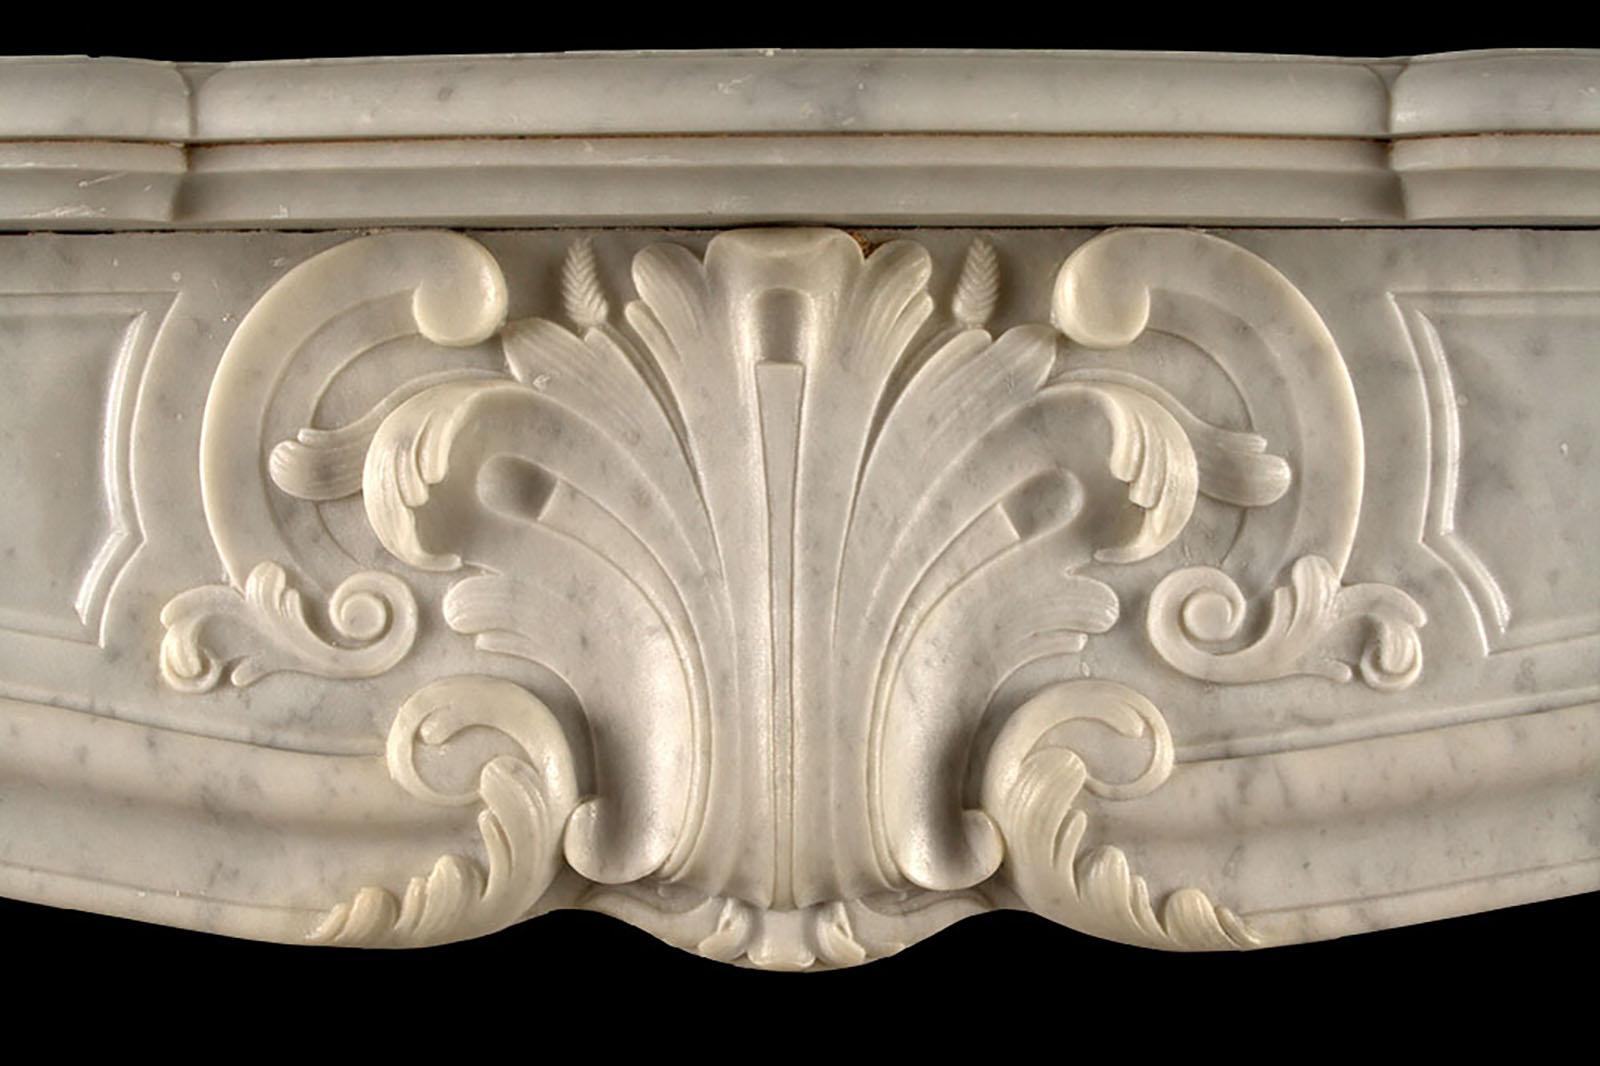 Großer antiker Louis XV-Kamin im Rokoko-Stil

Großer antiker Louis XV-Kamin, fein geschnitzt aus weißem Carrara-Marmor im Rokoko-Stil, mit einem geformten Serpentinen-Regal über dem getäfelten Fries, das von einer Muschelkartusche auf